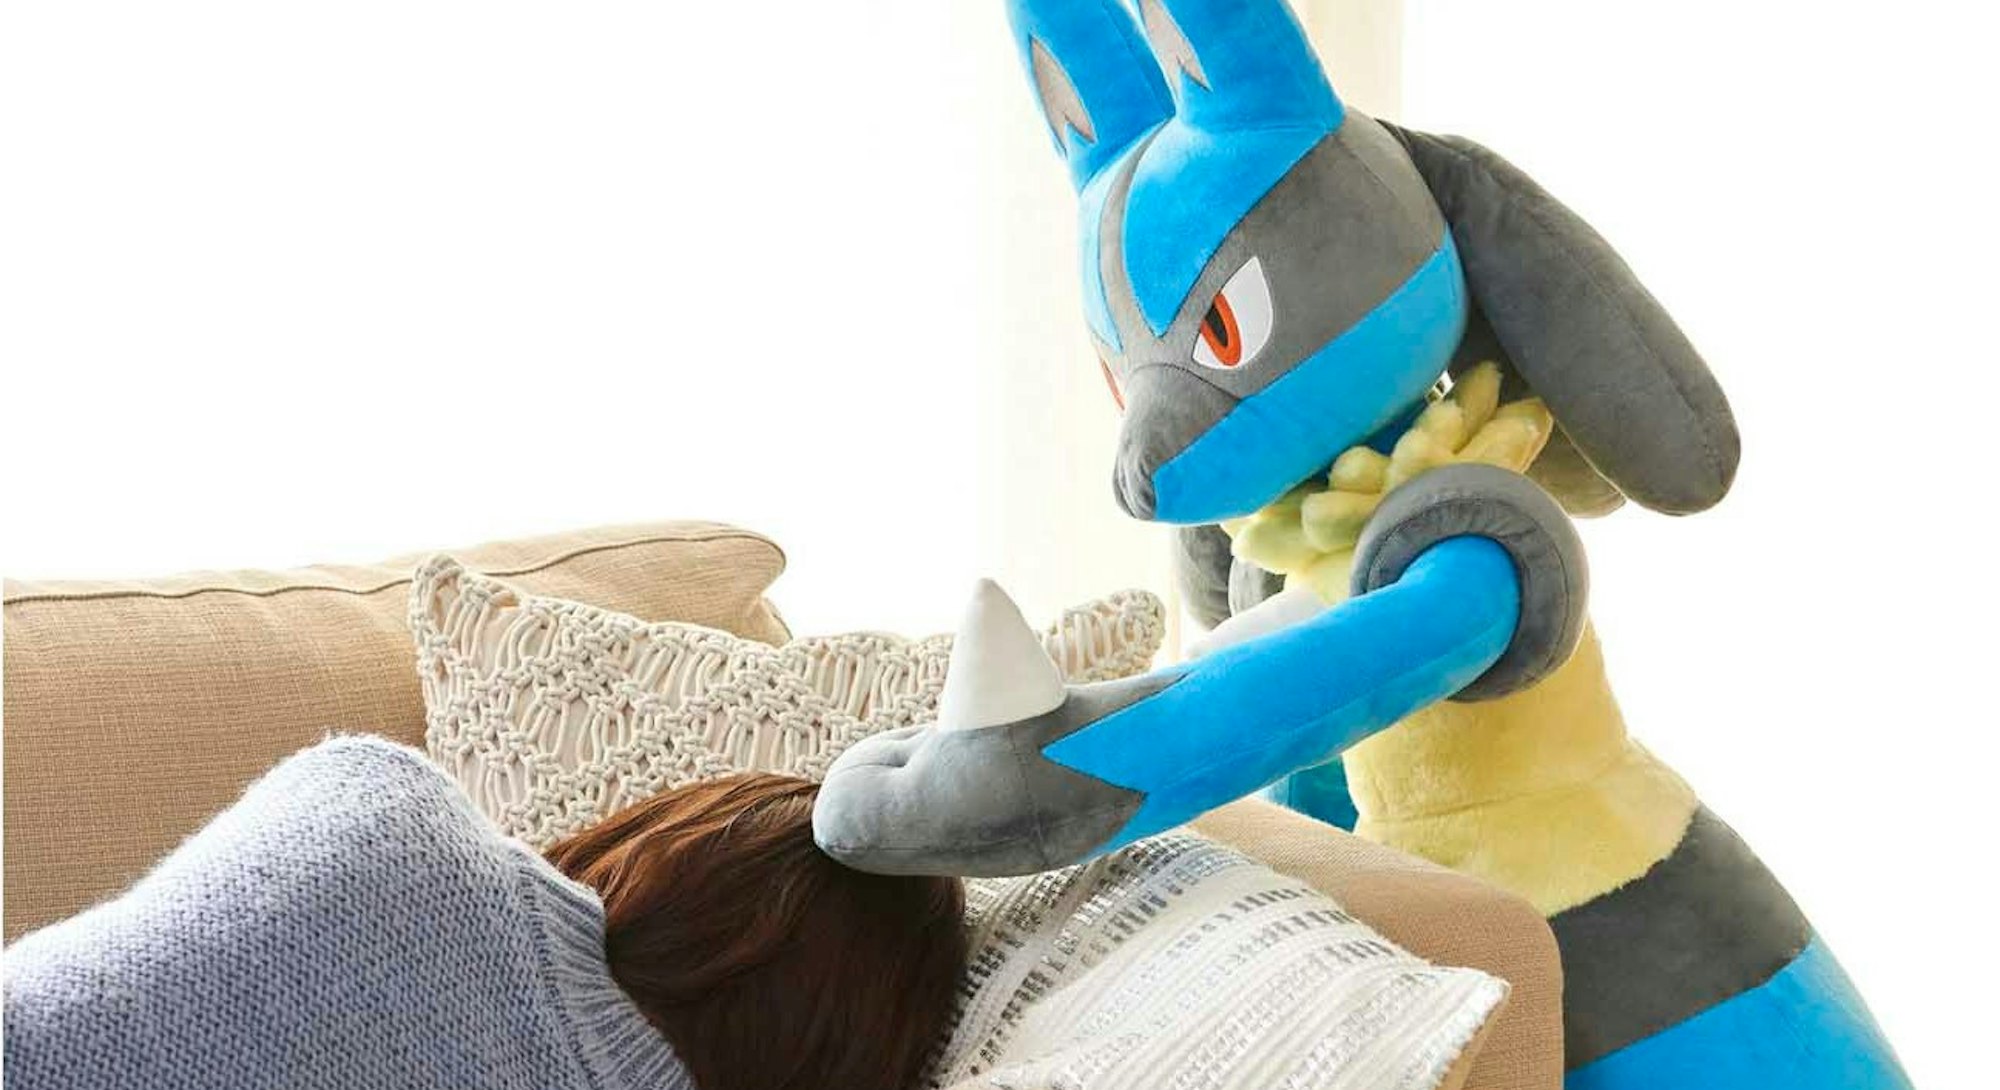 giant Lucario Pokémon plush